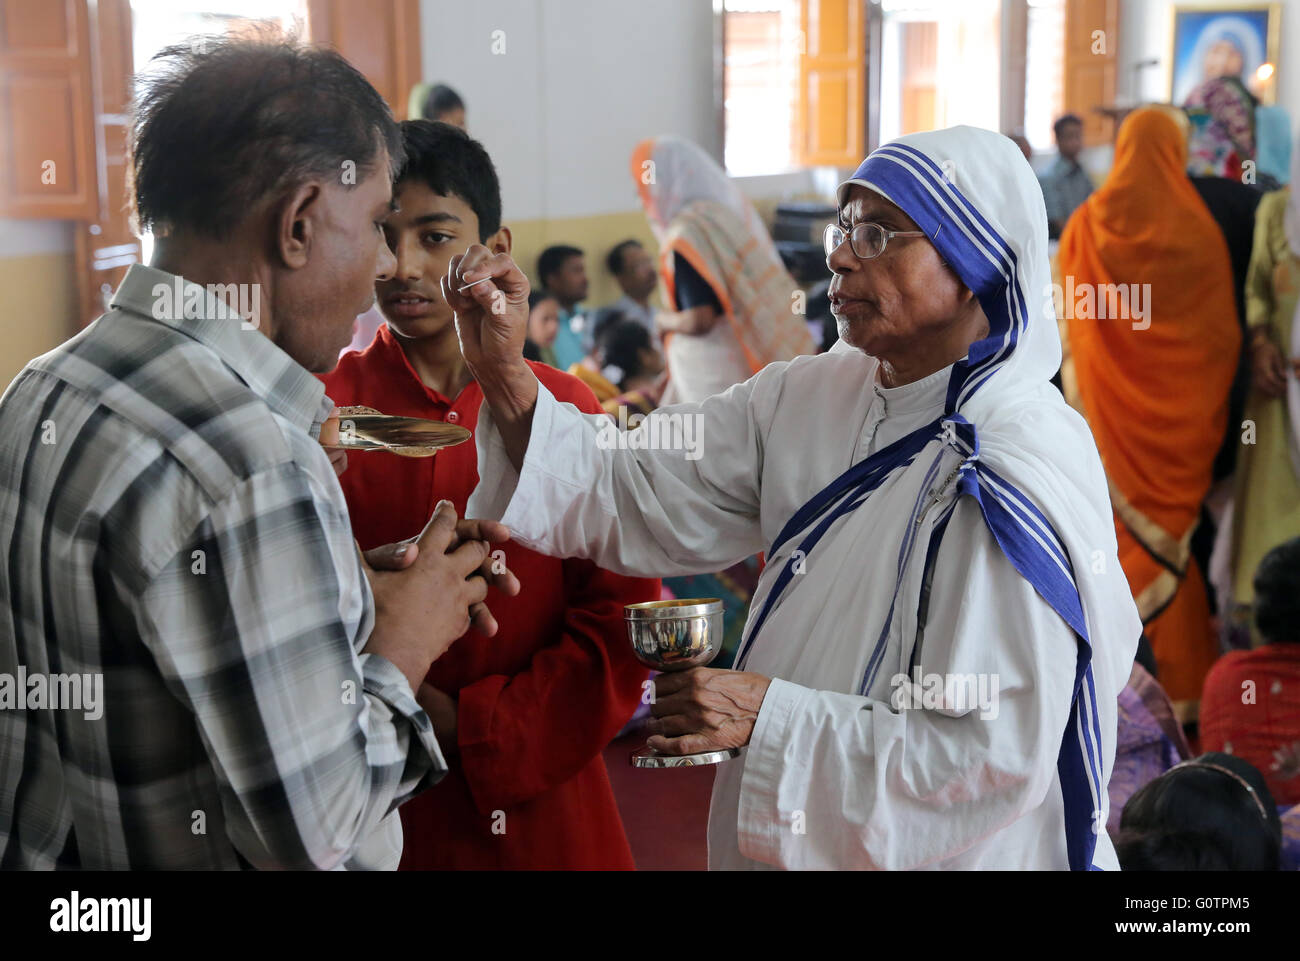 Teresa sorella (Missionari della Carità) condivide l Eucaristia durante un cattolico romano domenica a Messa in una piccola chiesa di Calcutta, in India Foto Stock